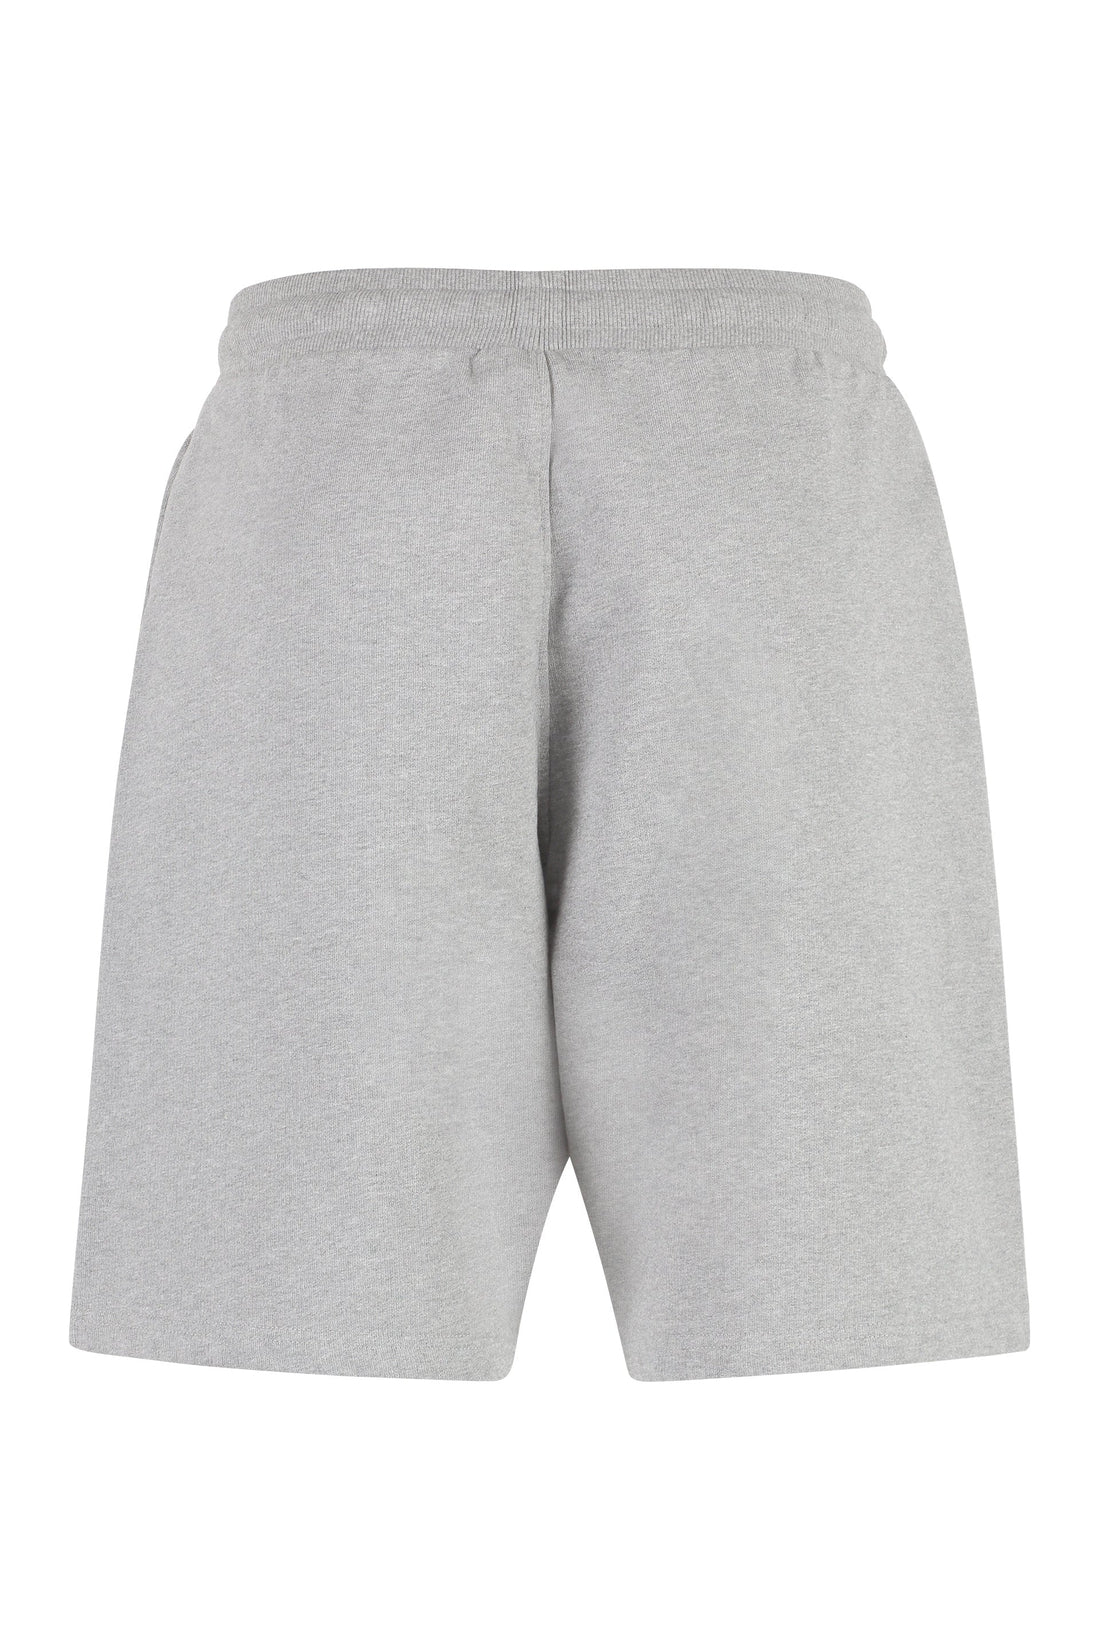 AMI PARIS-OUTLET-SALE-Cotton bermuda shorts-ARCHIVIST